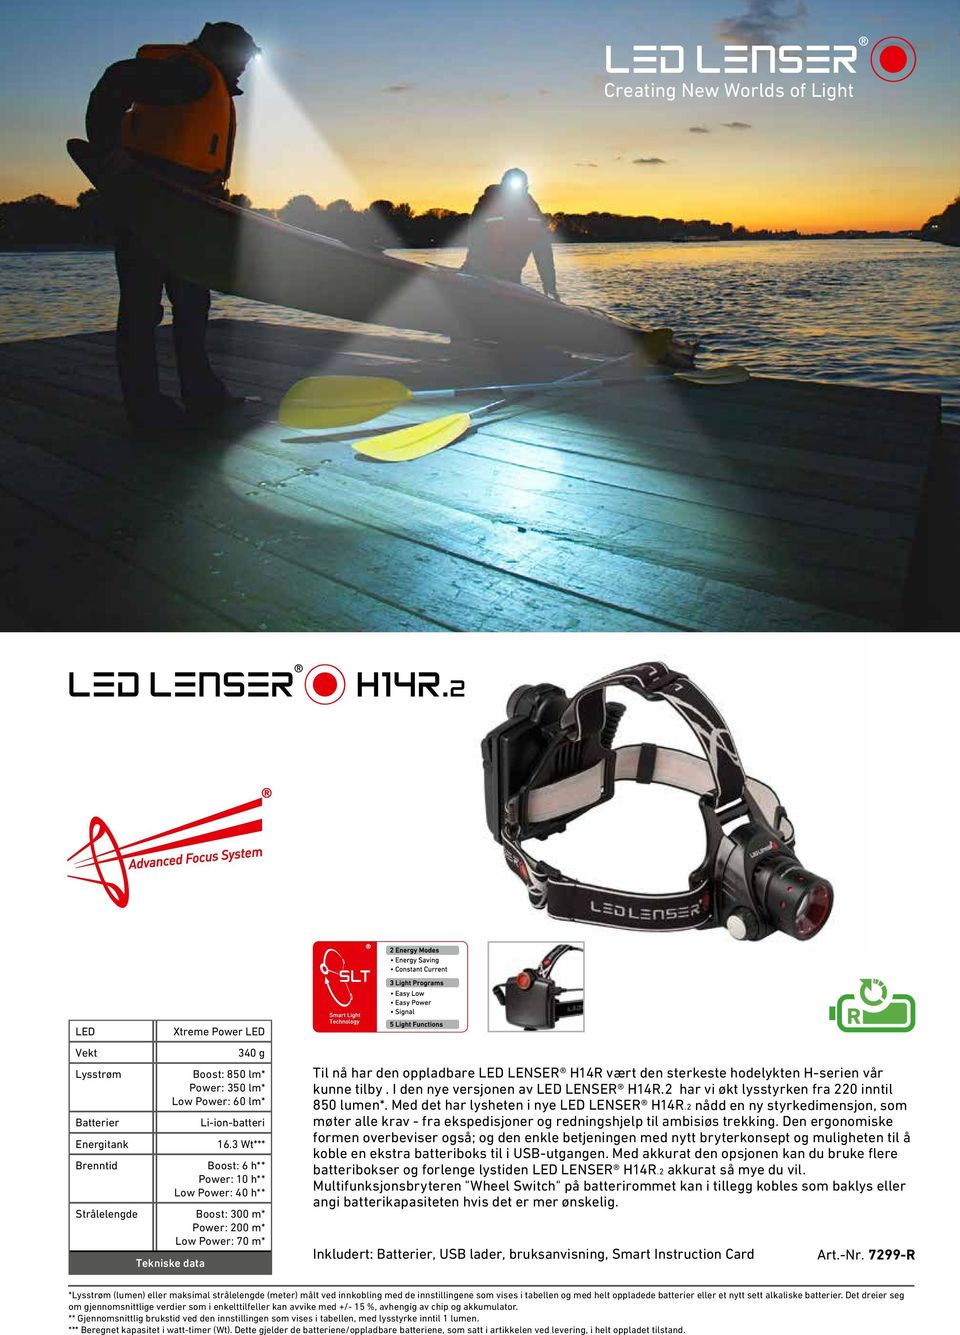 H-serien vår kunne tilby. I den nye versjonen av LENSER H14R.2 har vi økt lysstyrken fra 220 inntil 850 lumen*. Med det har lysheten i nye LENSER H14R.